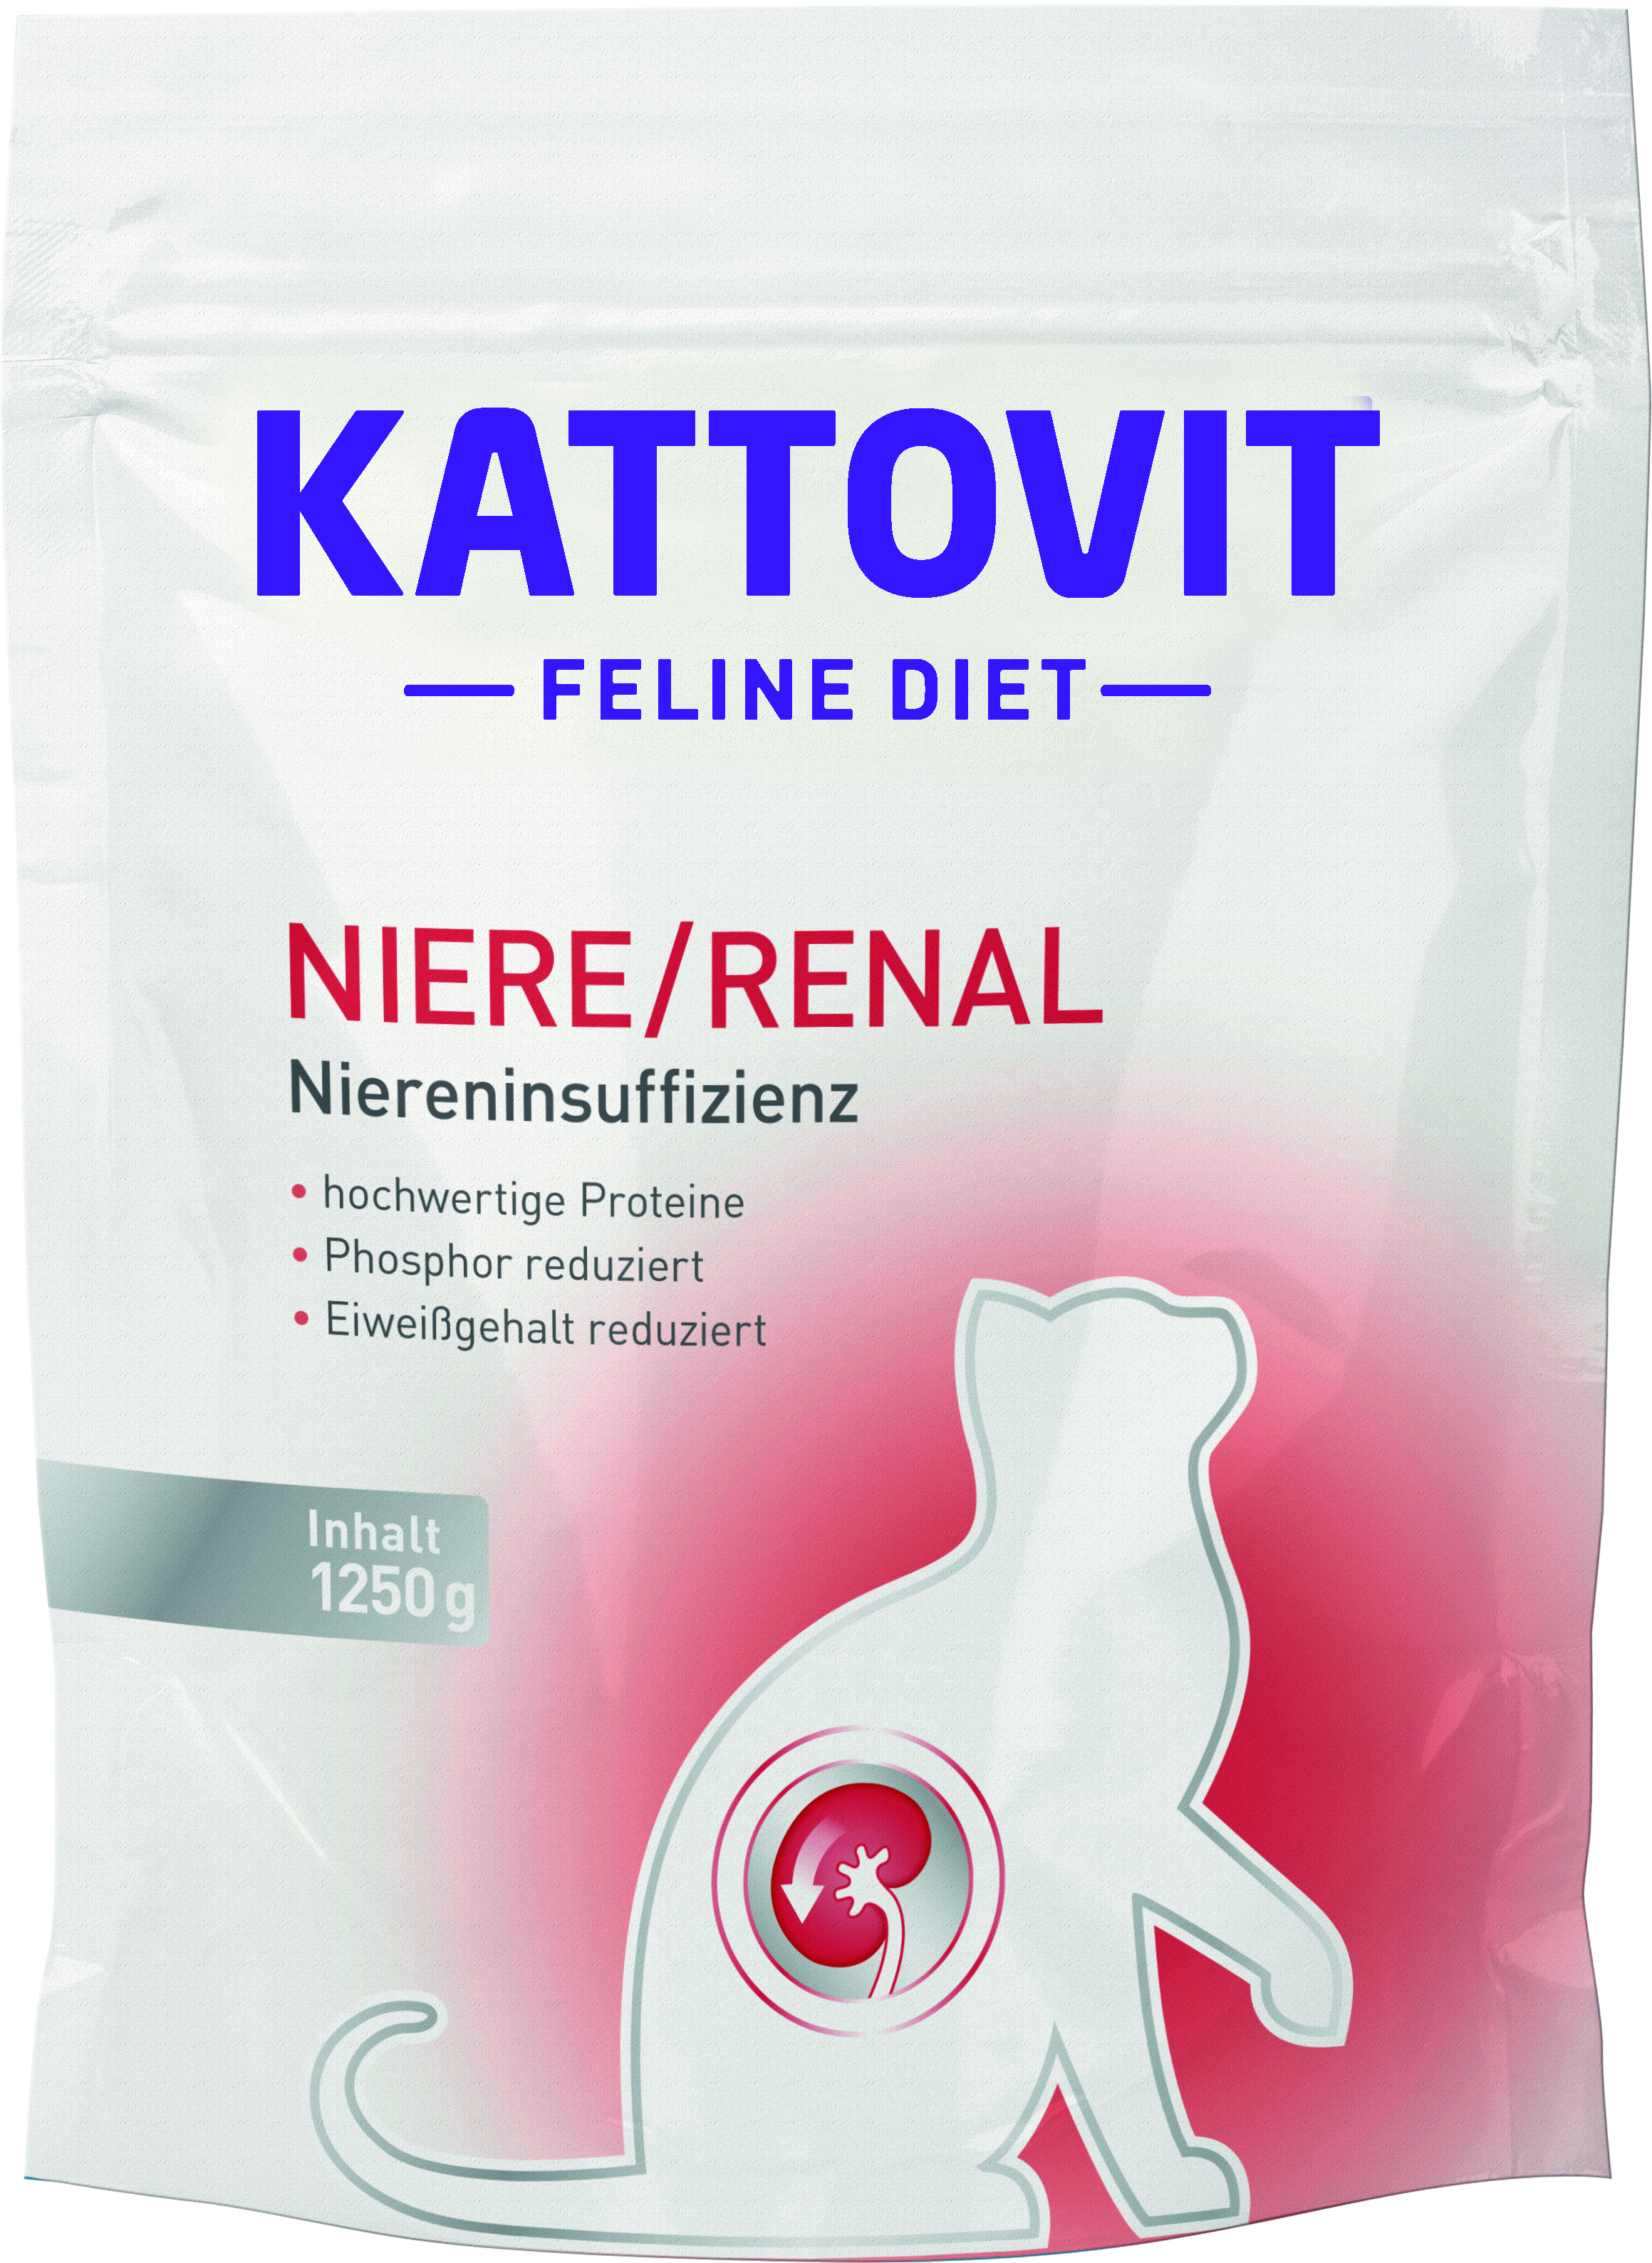 Kattovit Feline Diet Niere/Renal 1250g